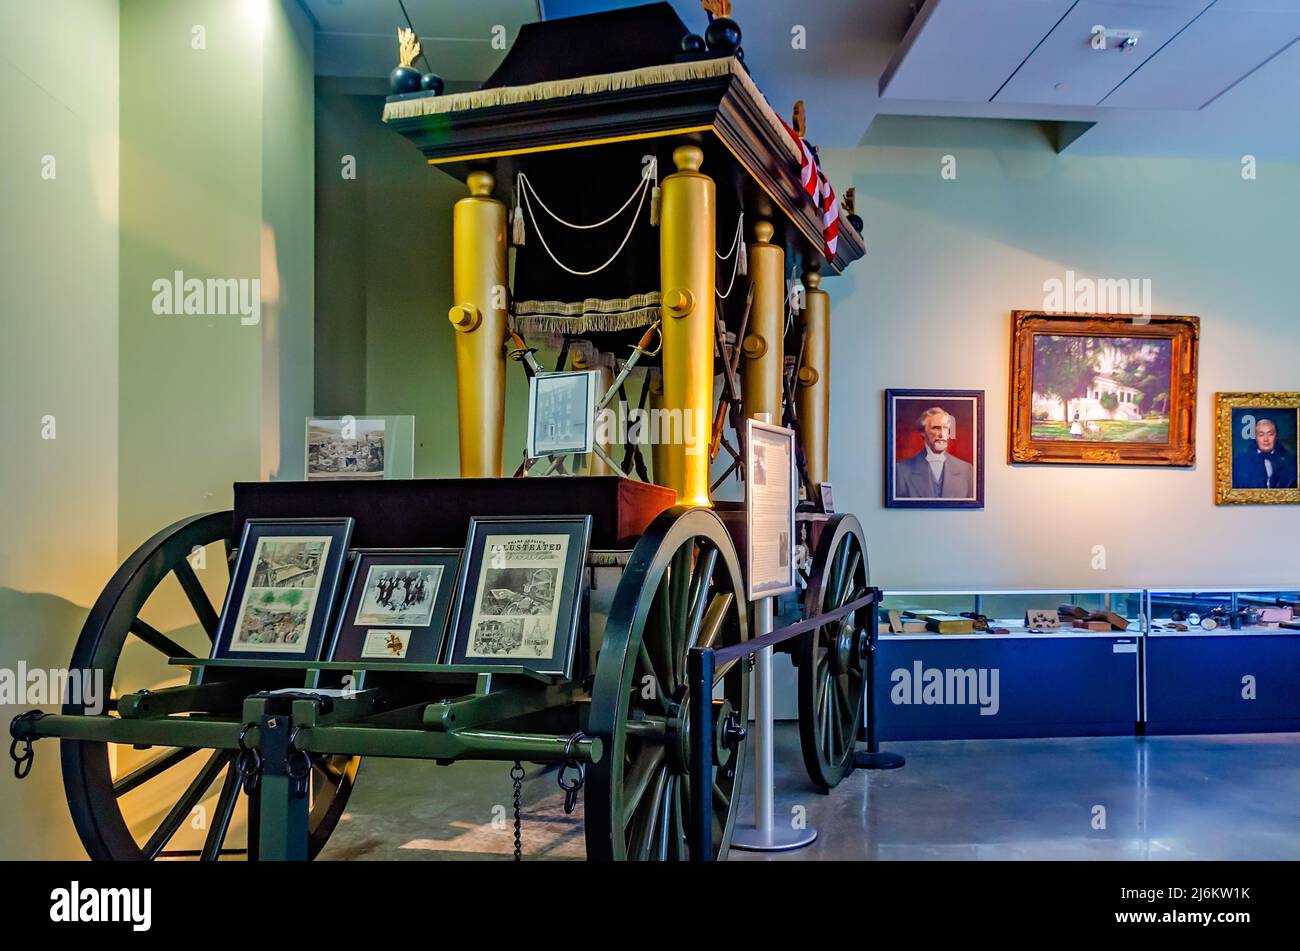 Die Katafalque, ein Begräbniswagen für den konföderierten Präsidenten Jefferson Davis, wird in der Jefferson Davis Presidential Library in Biloxi ausgestellt. Stockfoto